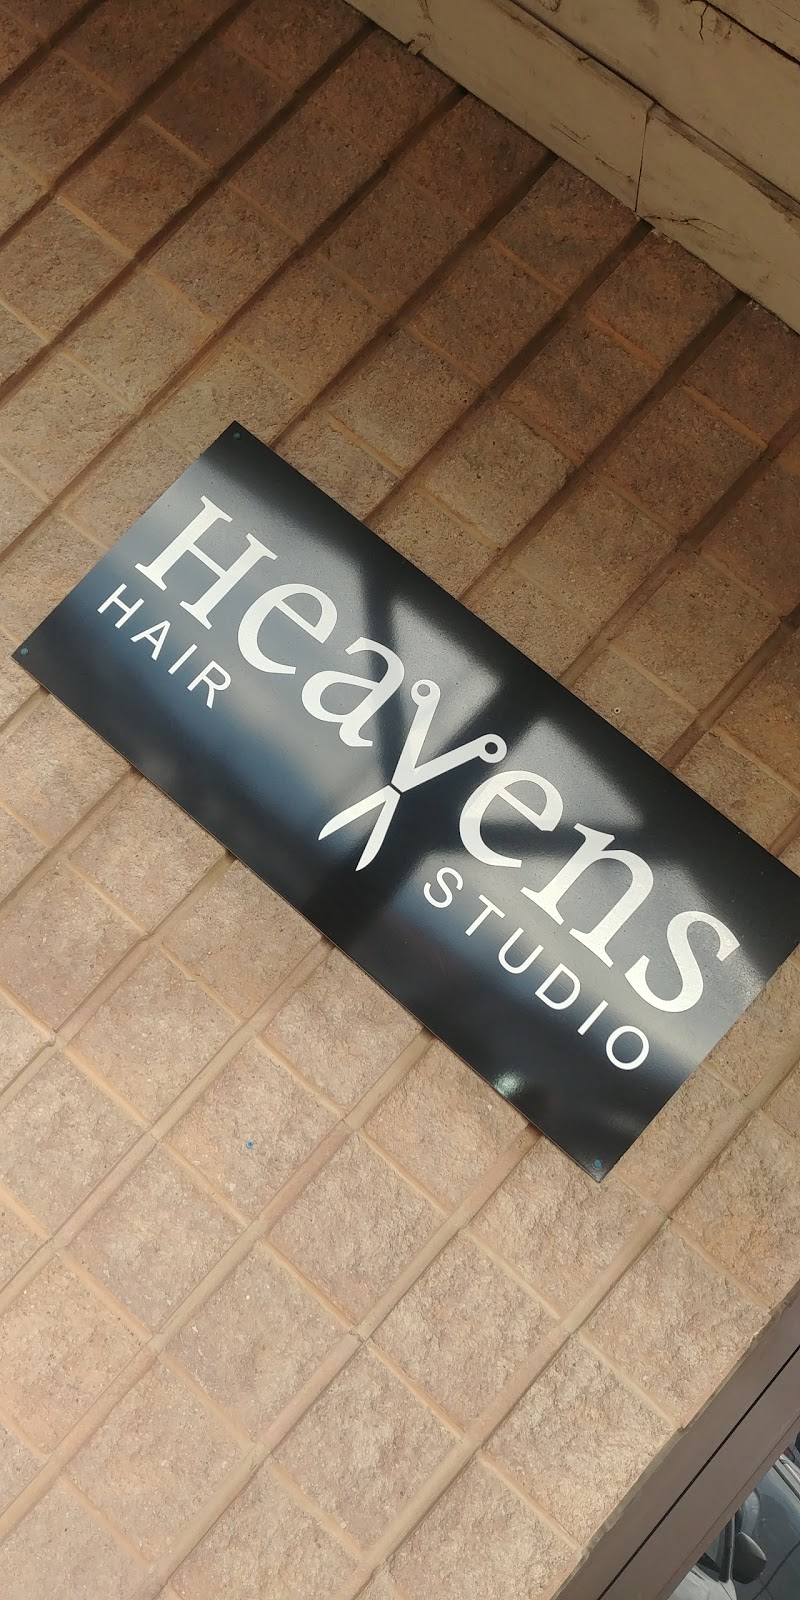 Heavens Hair Studio | hair care | 3860 Dominion Rd, Ridgeway, ON L0S 1N0, Canada | 9058945675 OR +1 905-894-5675